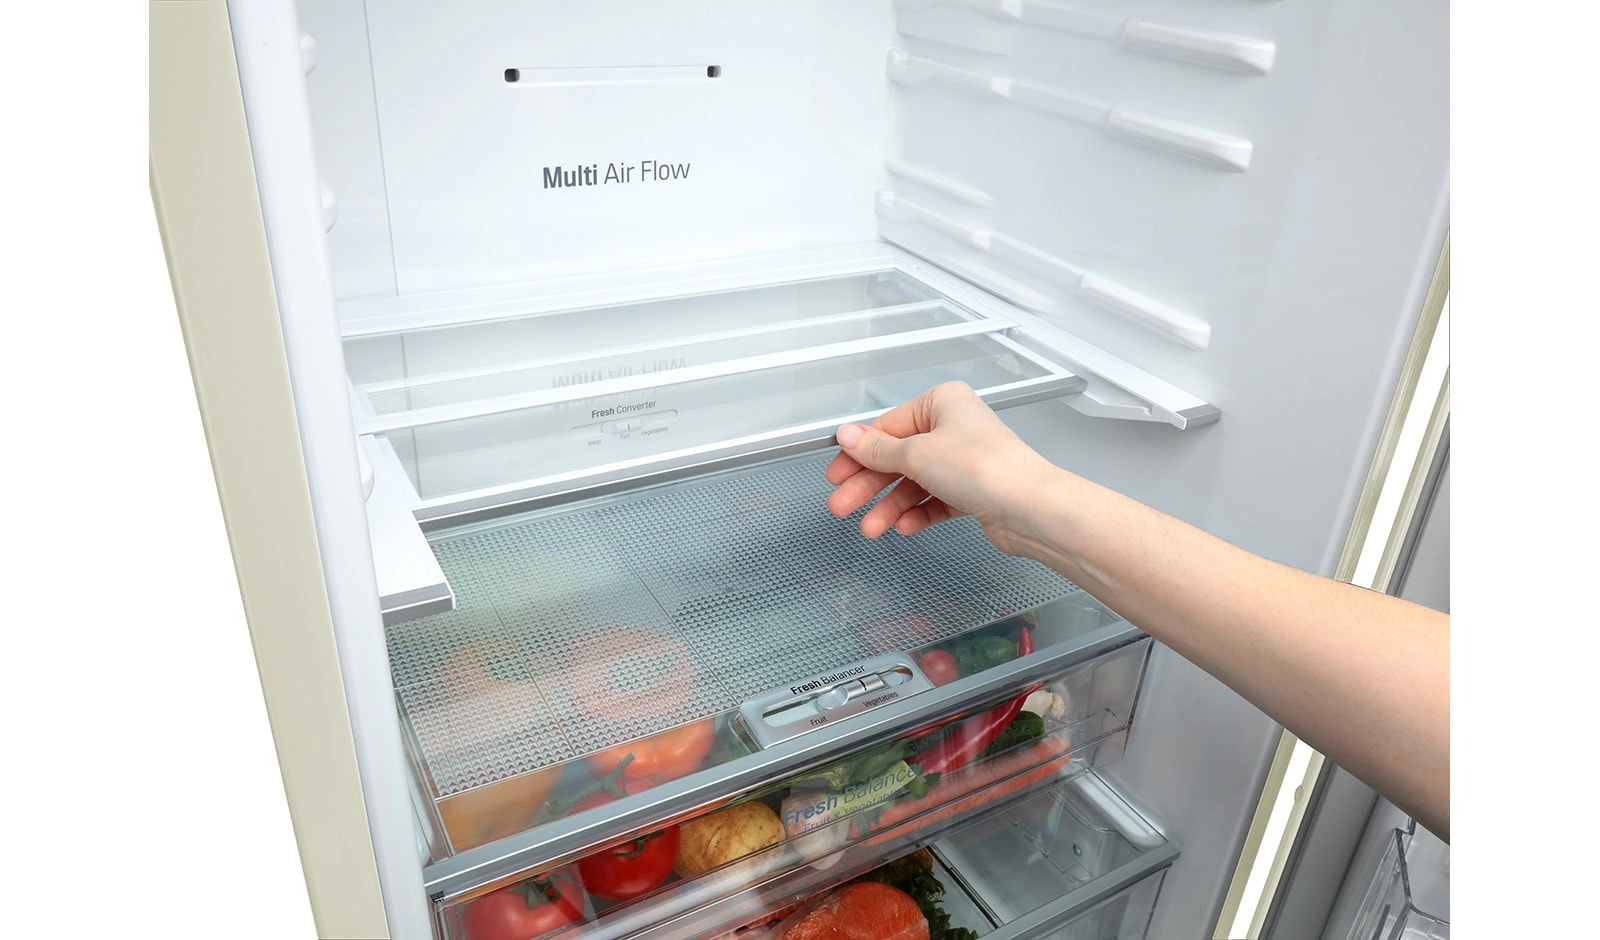 Холодильник с нижней морозильной камерой LG GAB499SEQZ, 360 л, 200 см, A++, Бежевый